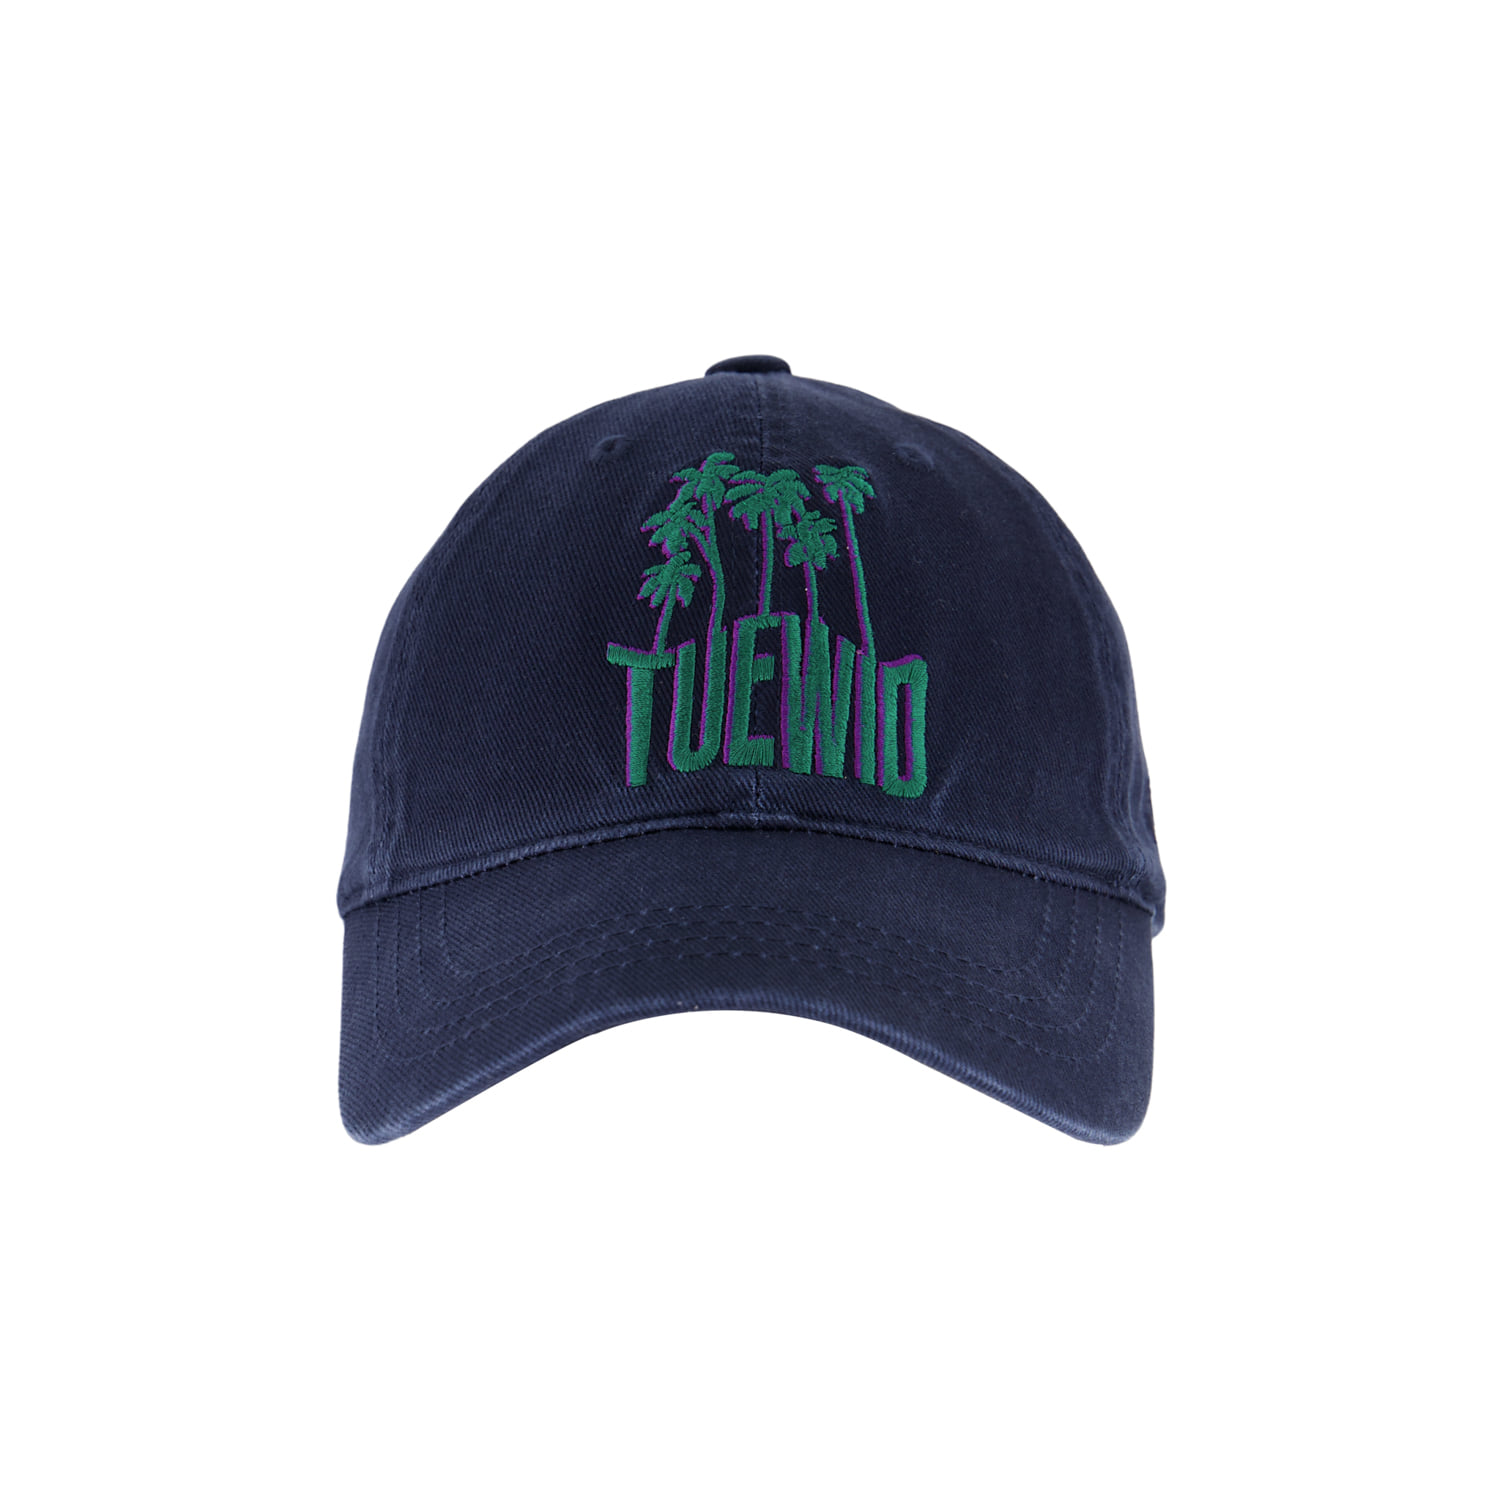 Tuewid souvenir cap ´palm tree’